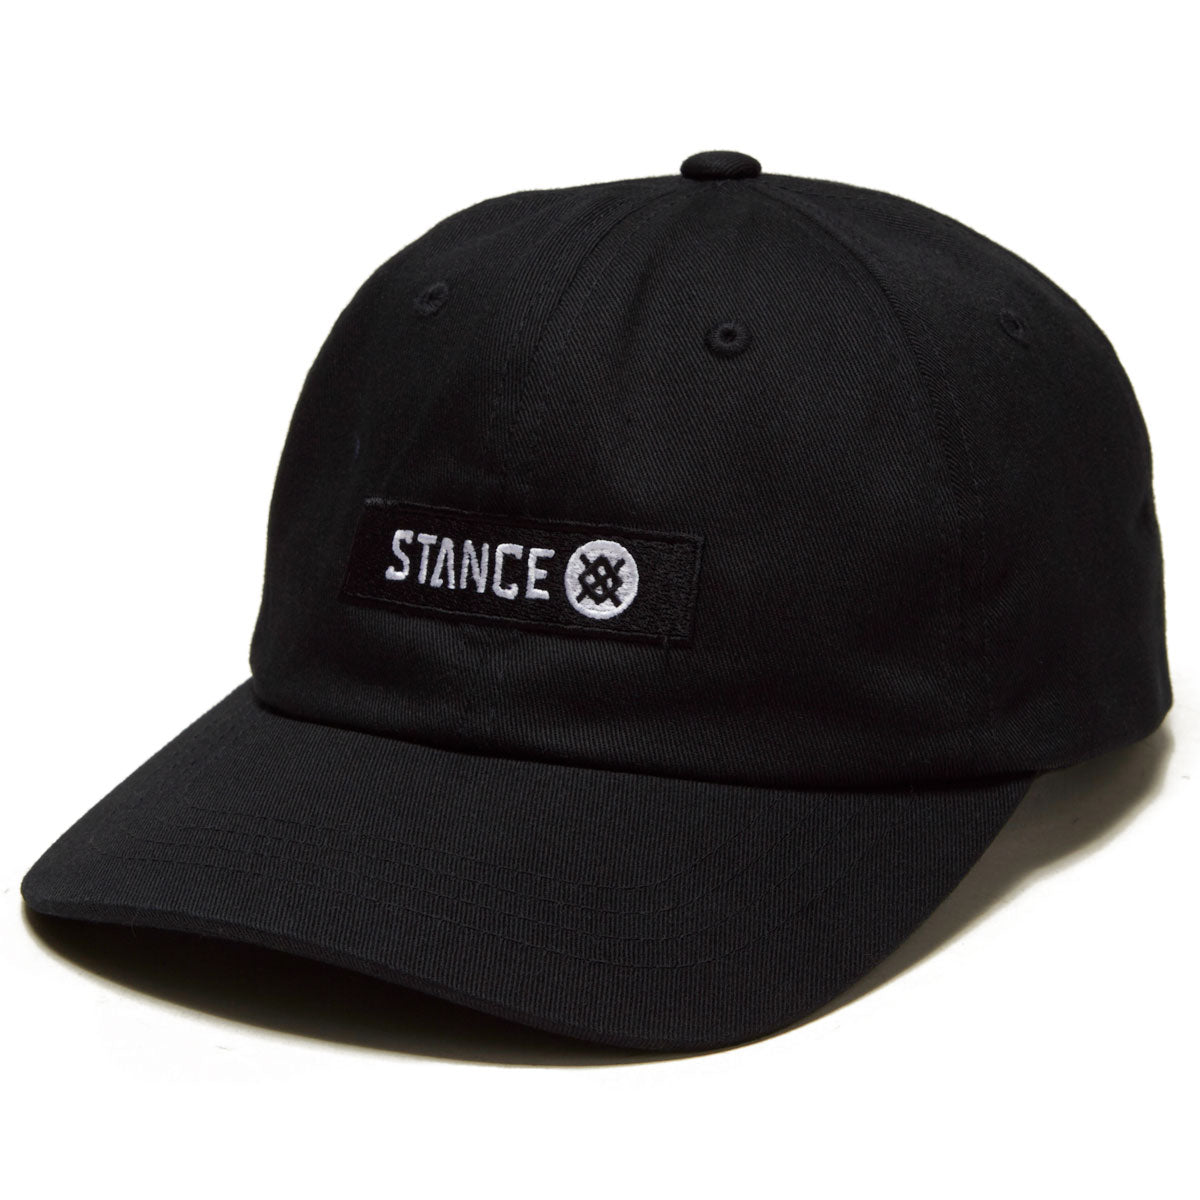 Stance Standard Adjustable Cap, Black